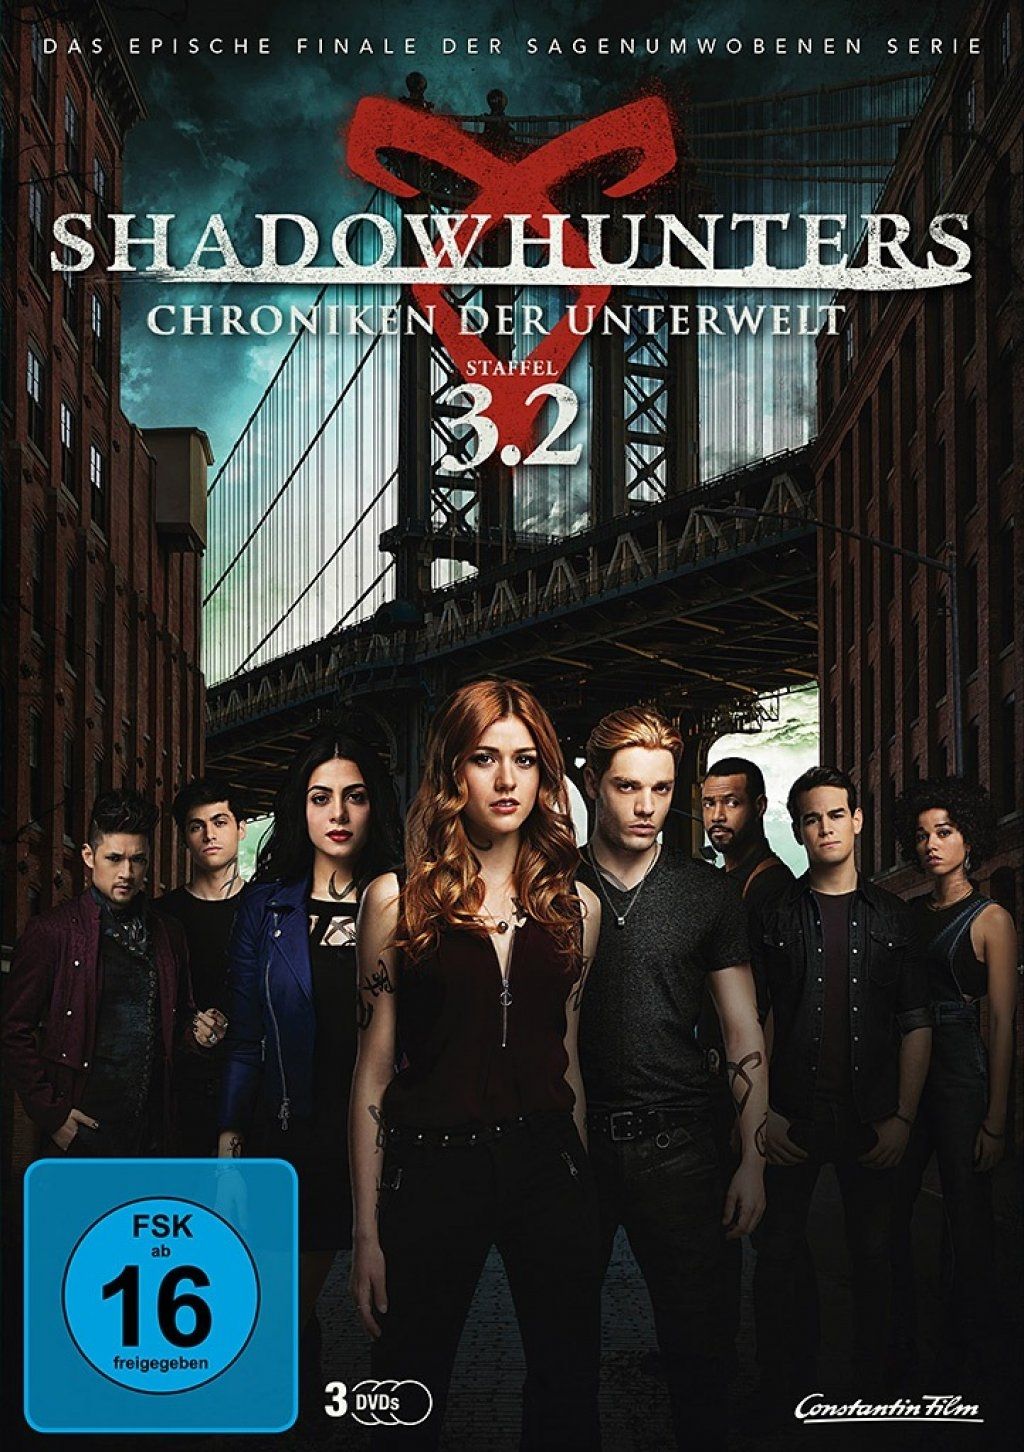 Shadowhunters - Chroniken der Unterwelt - Staffel 3.2 (3 Discs)